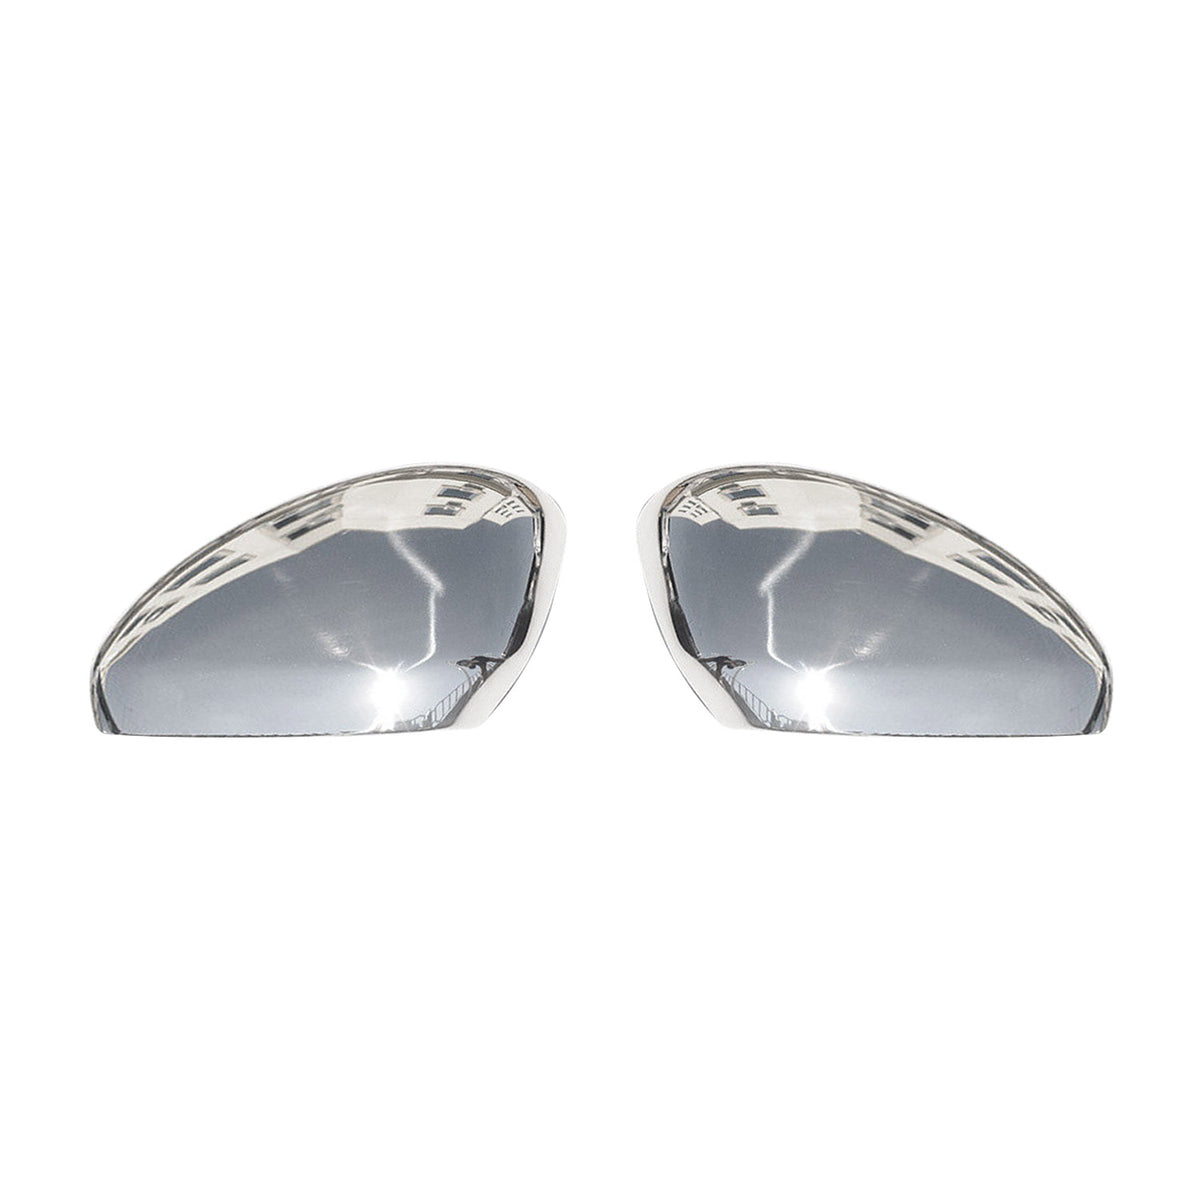 Für Peugeot RCZ 2010-2015 Chrom Spiegelkappen Spiegelabdeckung 2 tlg Edelstahl